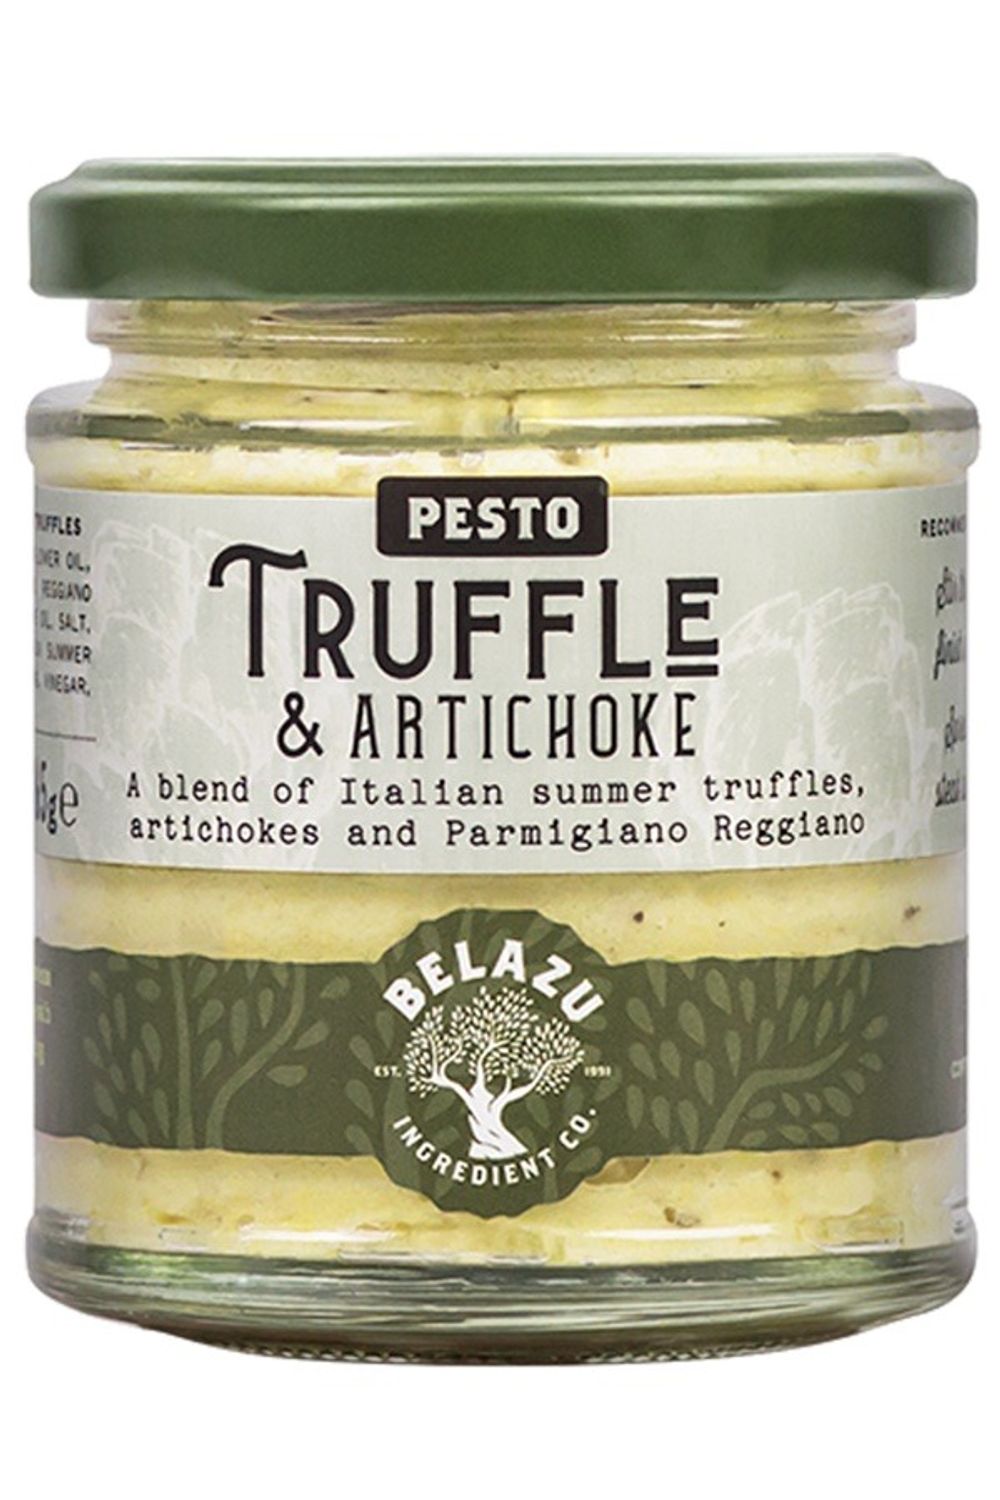 Truffle and Artichoke Pesto